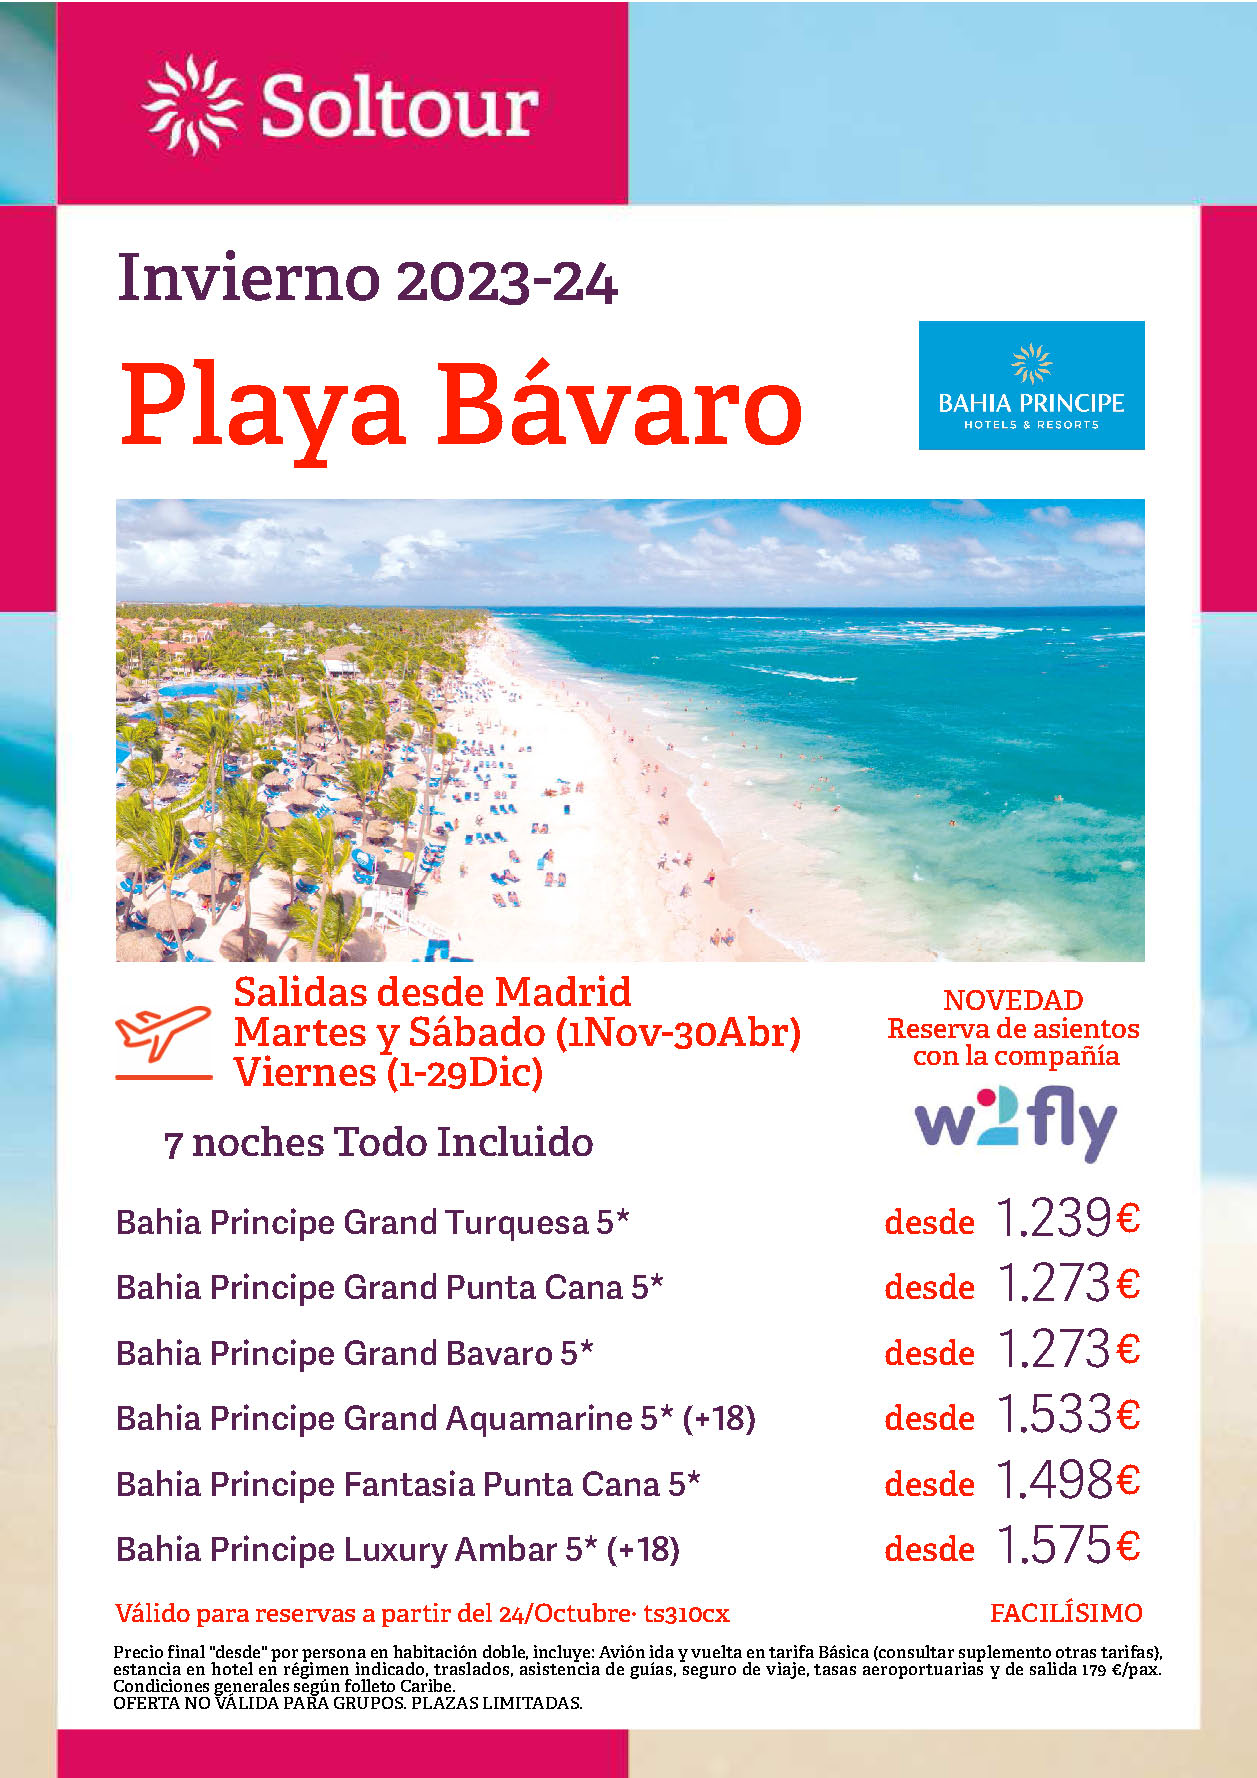 Oferta Soltour Otoño 2023 invierno 2024 Republica Dominicana Playa Bavaro hoteles Bahia Principe 9 dias Todo Incluido salidas vuelo directo desde Madrid